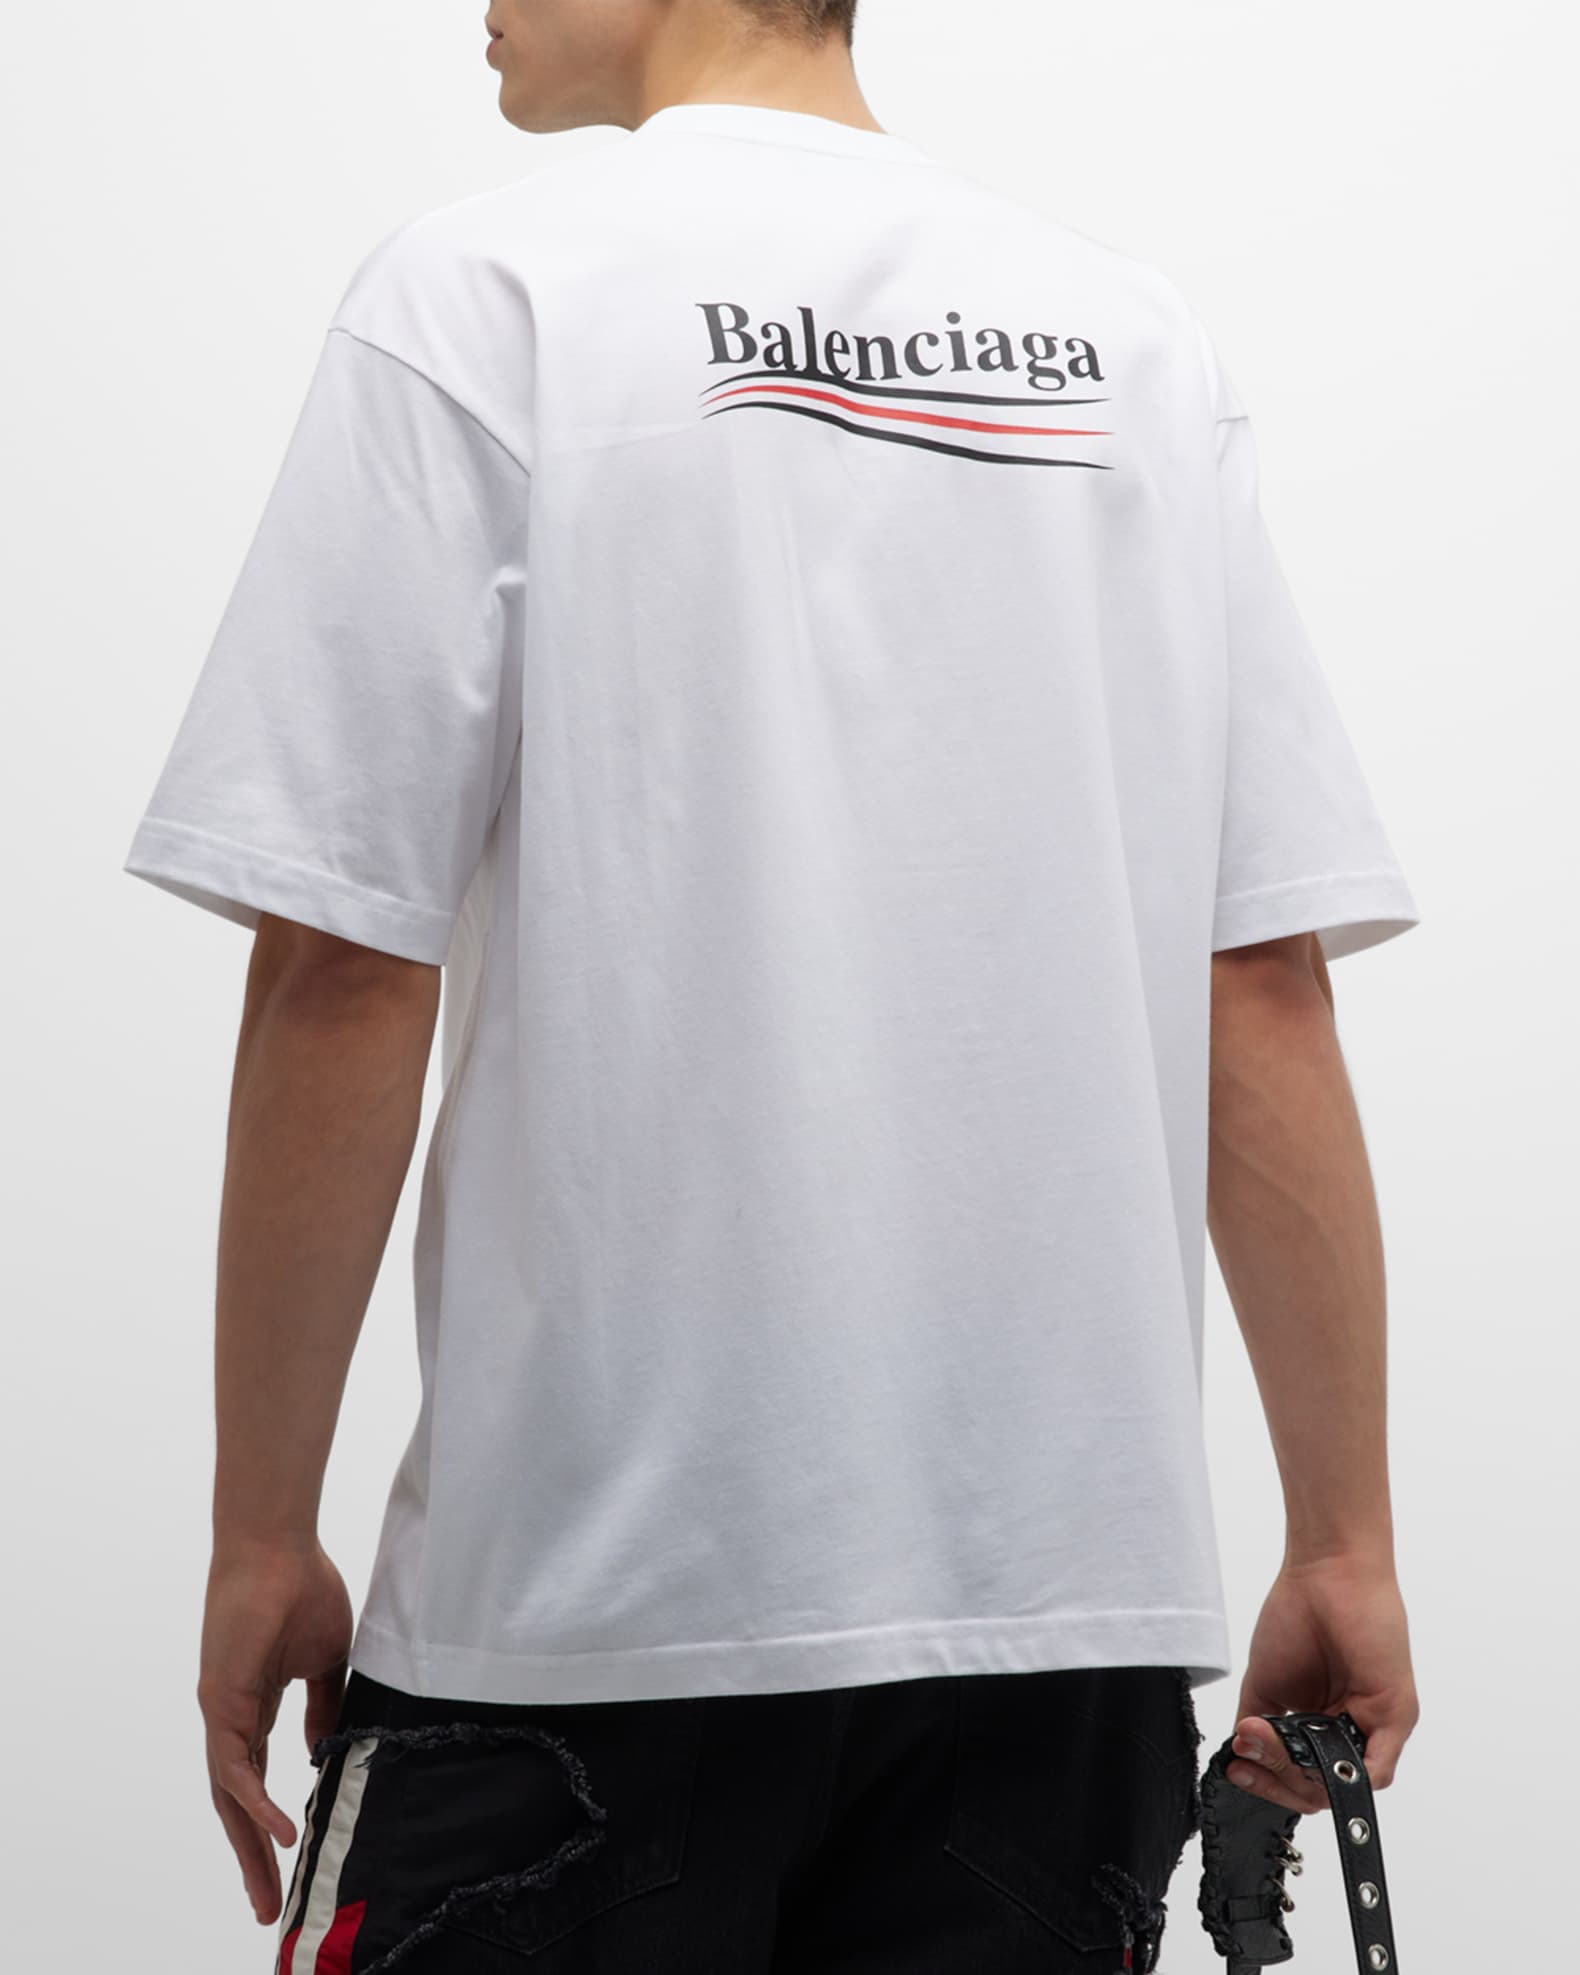 Balenciaga Men's Political Campaign Oversize T-Shirt